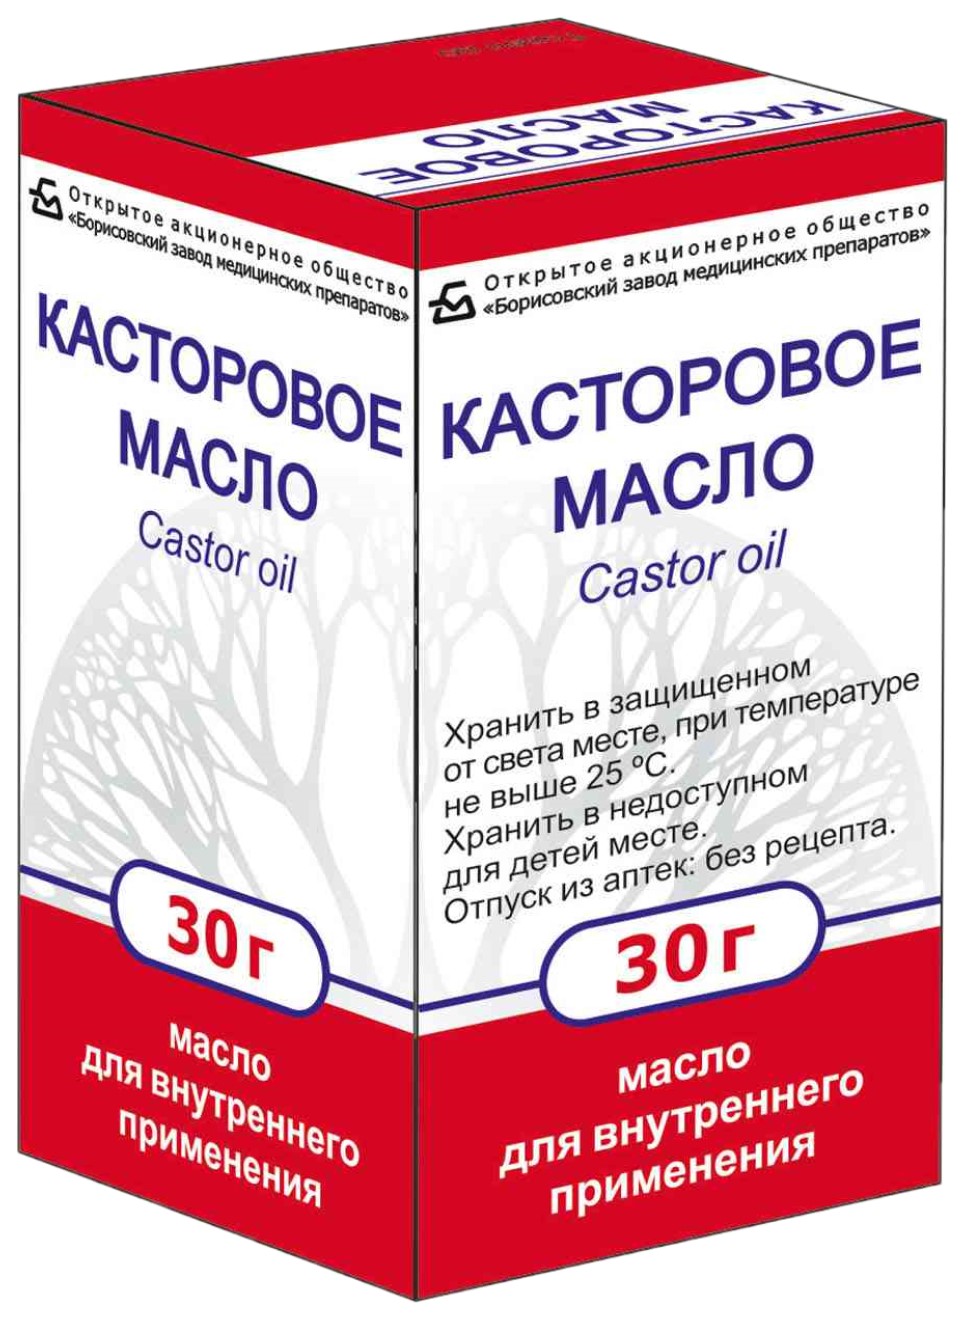 Купить Касторовое масло флакон 30 г, Борисовский завод медицинских препаратов